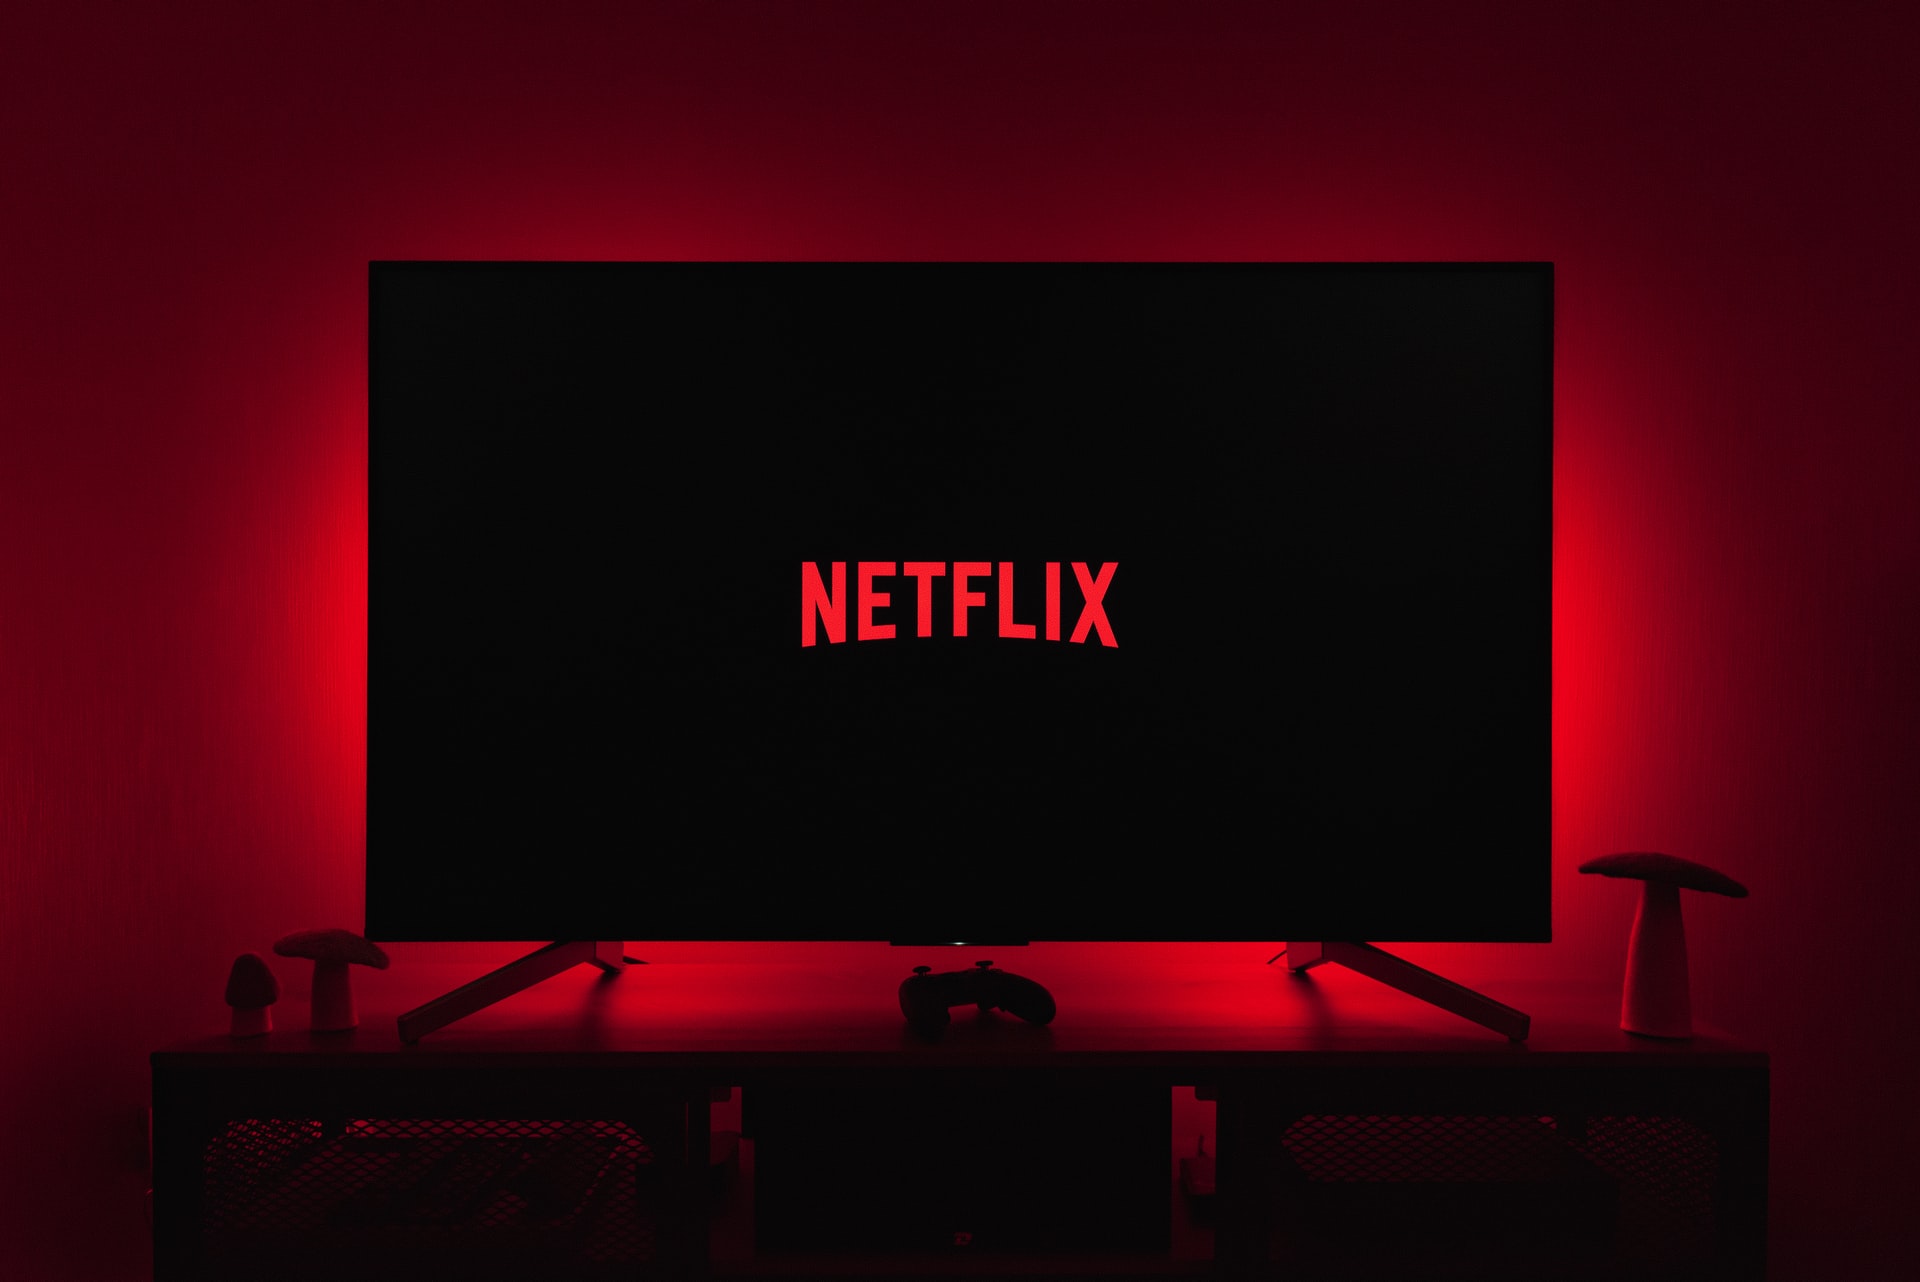 Televisión con el logo de Netflix